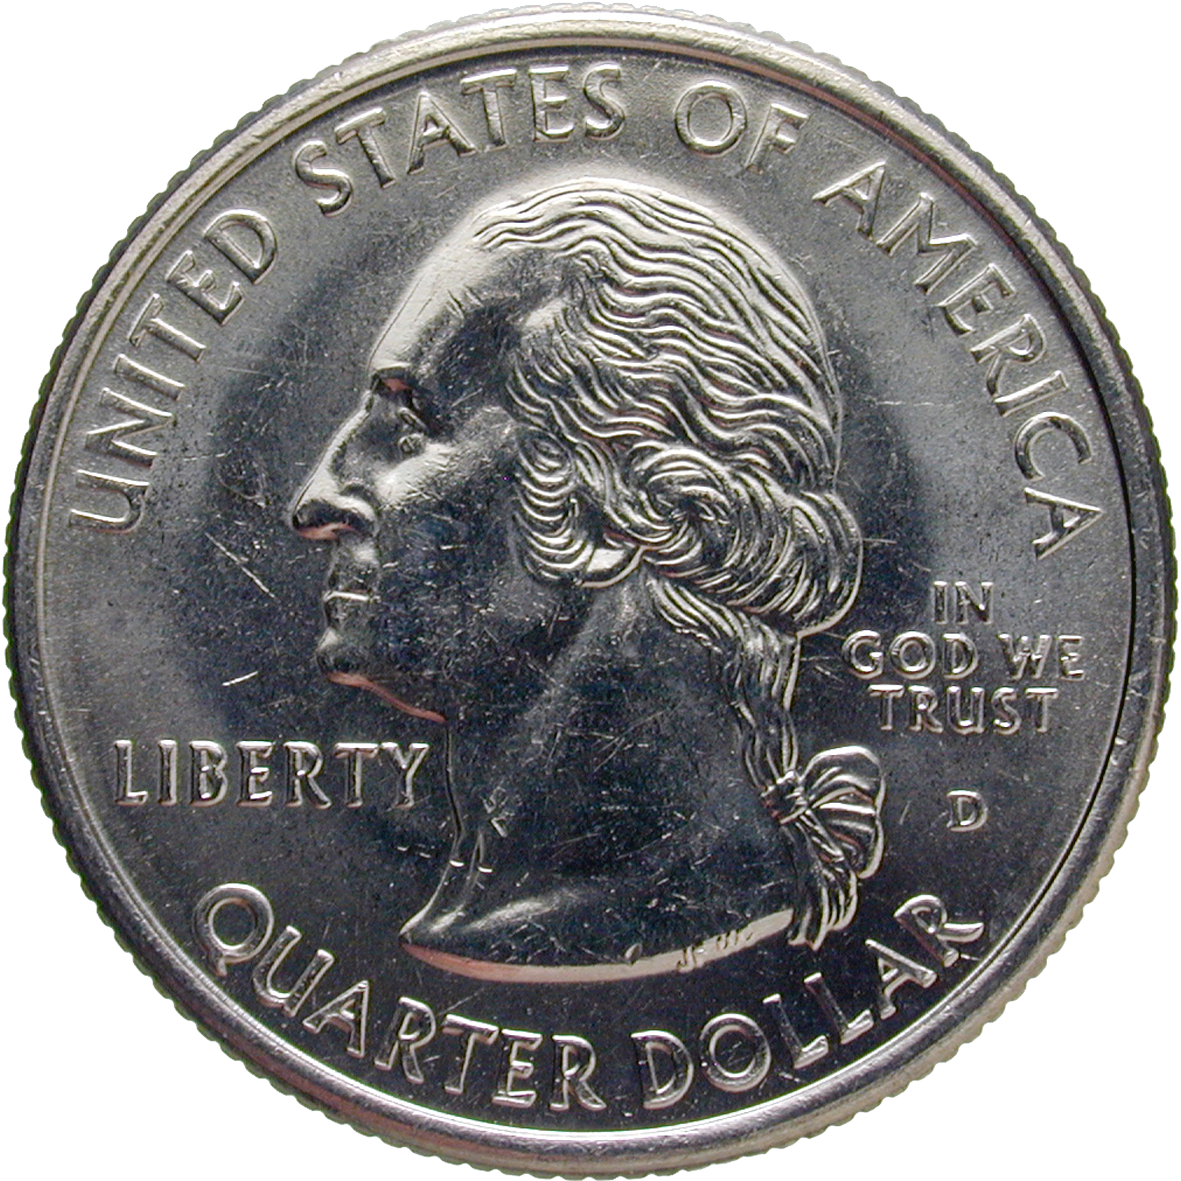 Vereinigte Staaten von Amerika, Quarter Dollar 1999 (obverse)